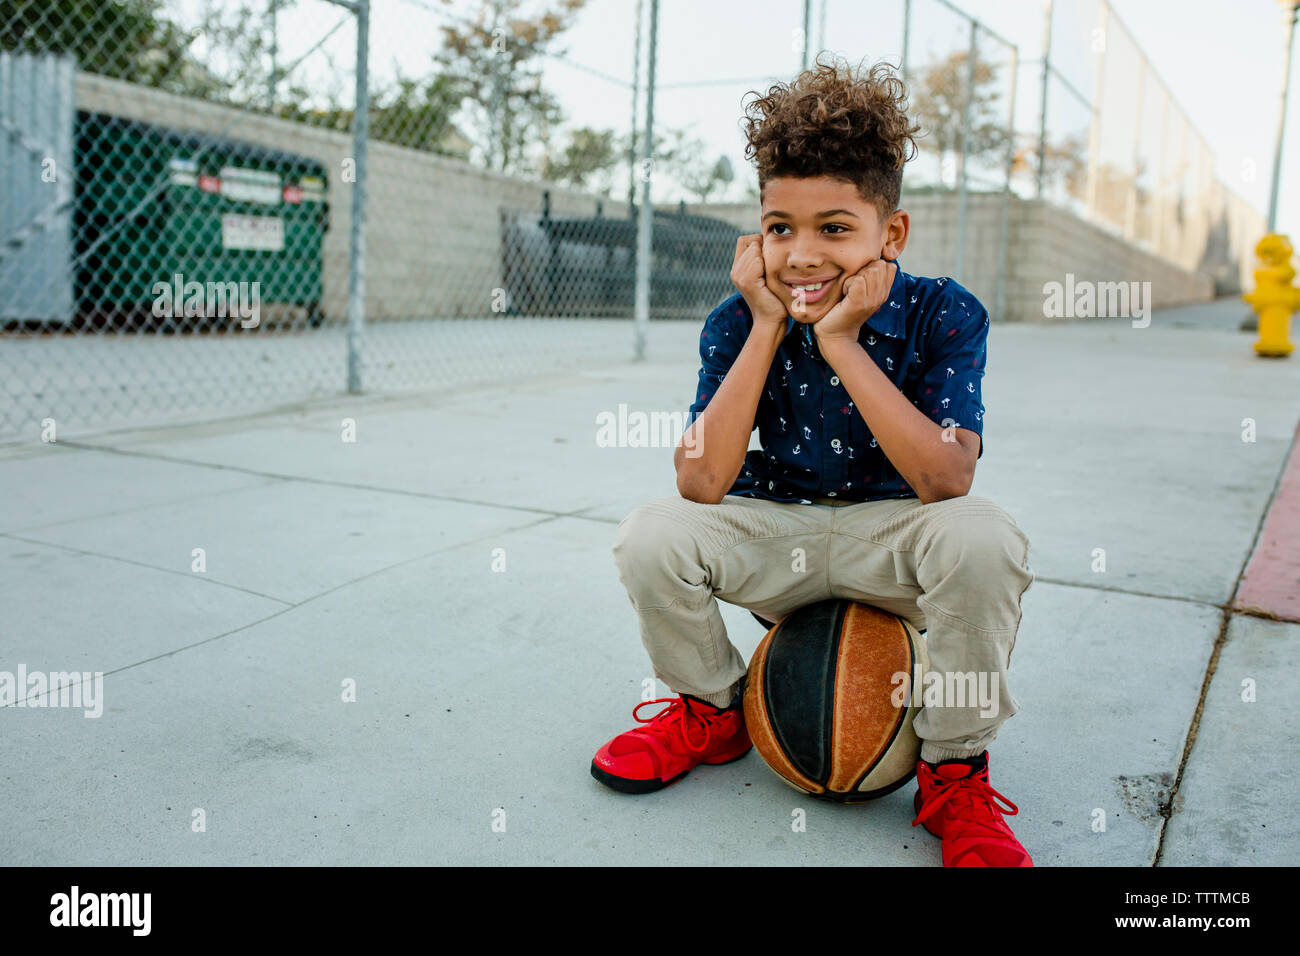 Garçon assis sur une balle sur un terrain de basket-ball Banque D'Images